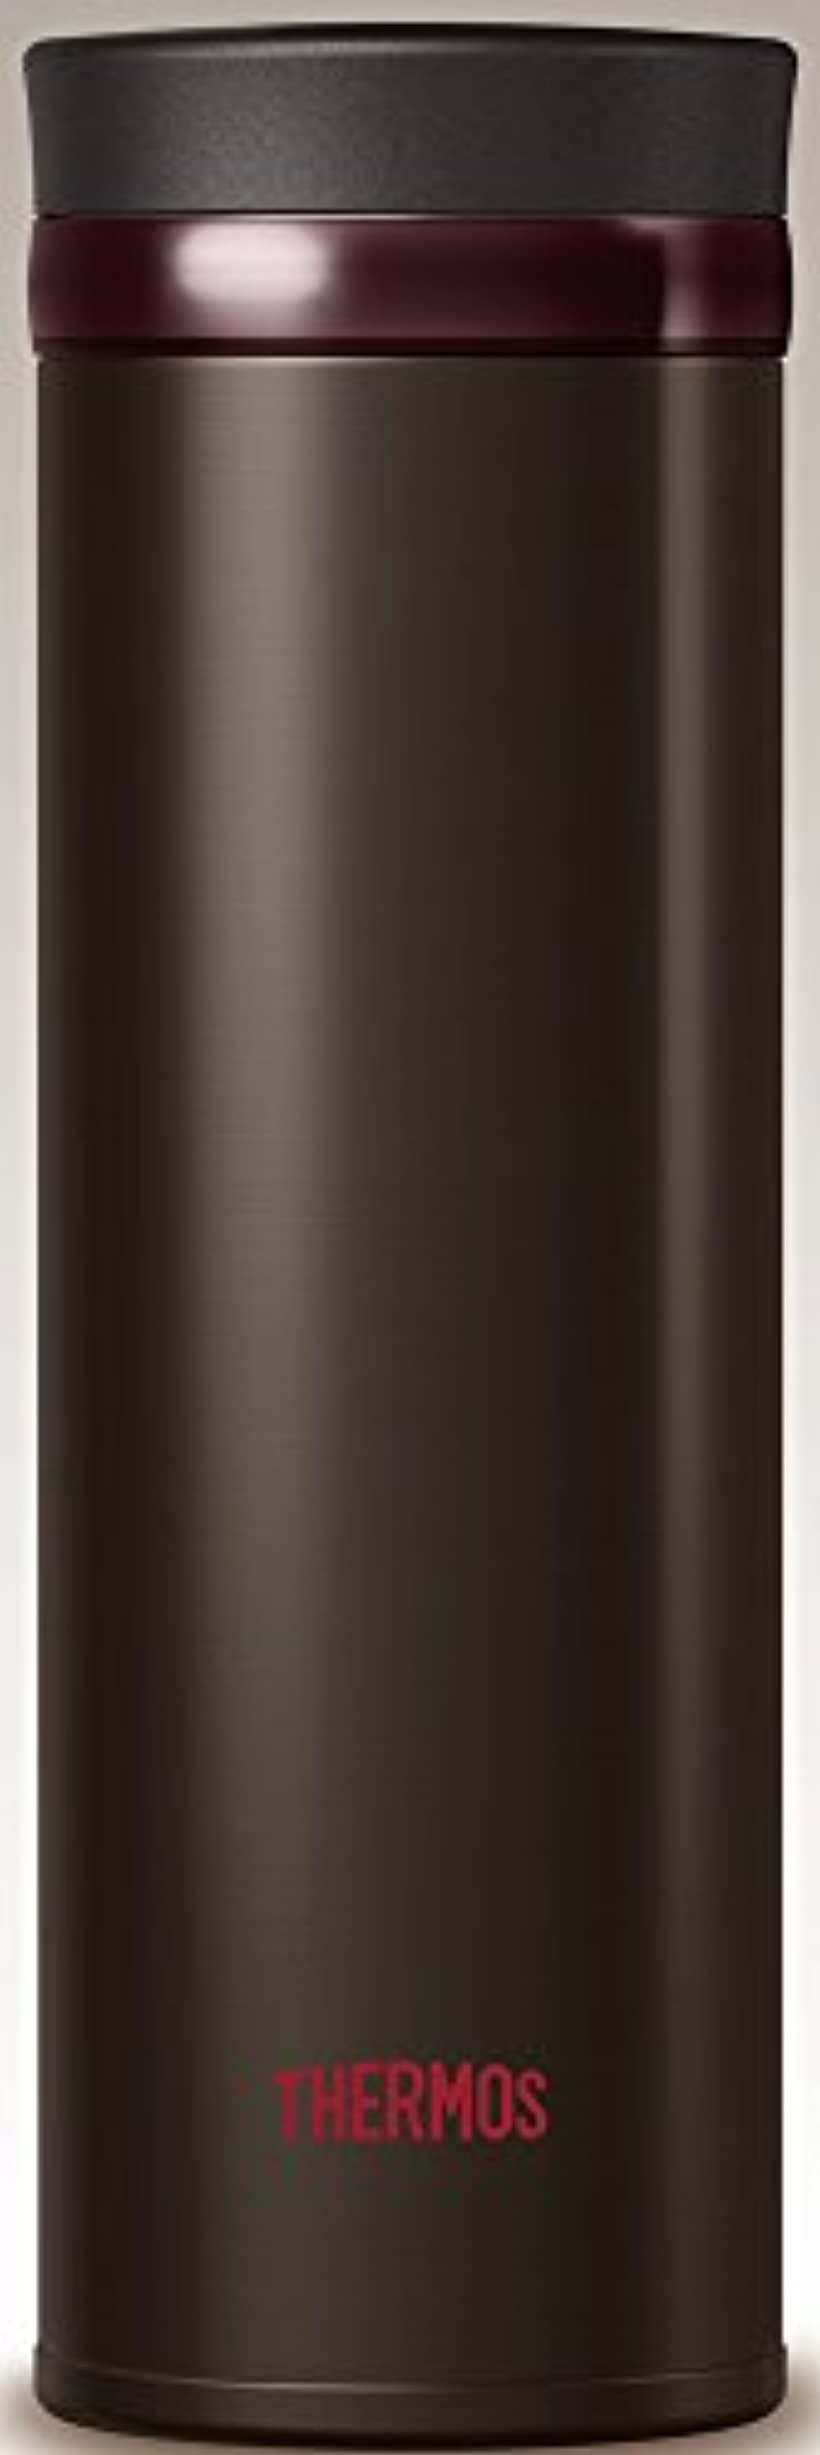 水筒 真空断熱ケータイマグ 350ml エスプレッソ JNO-351 ESP(エスプレッソ, 0.35L)